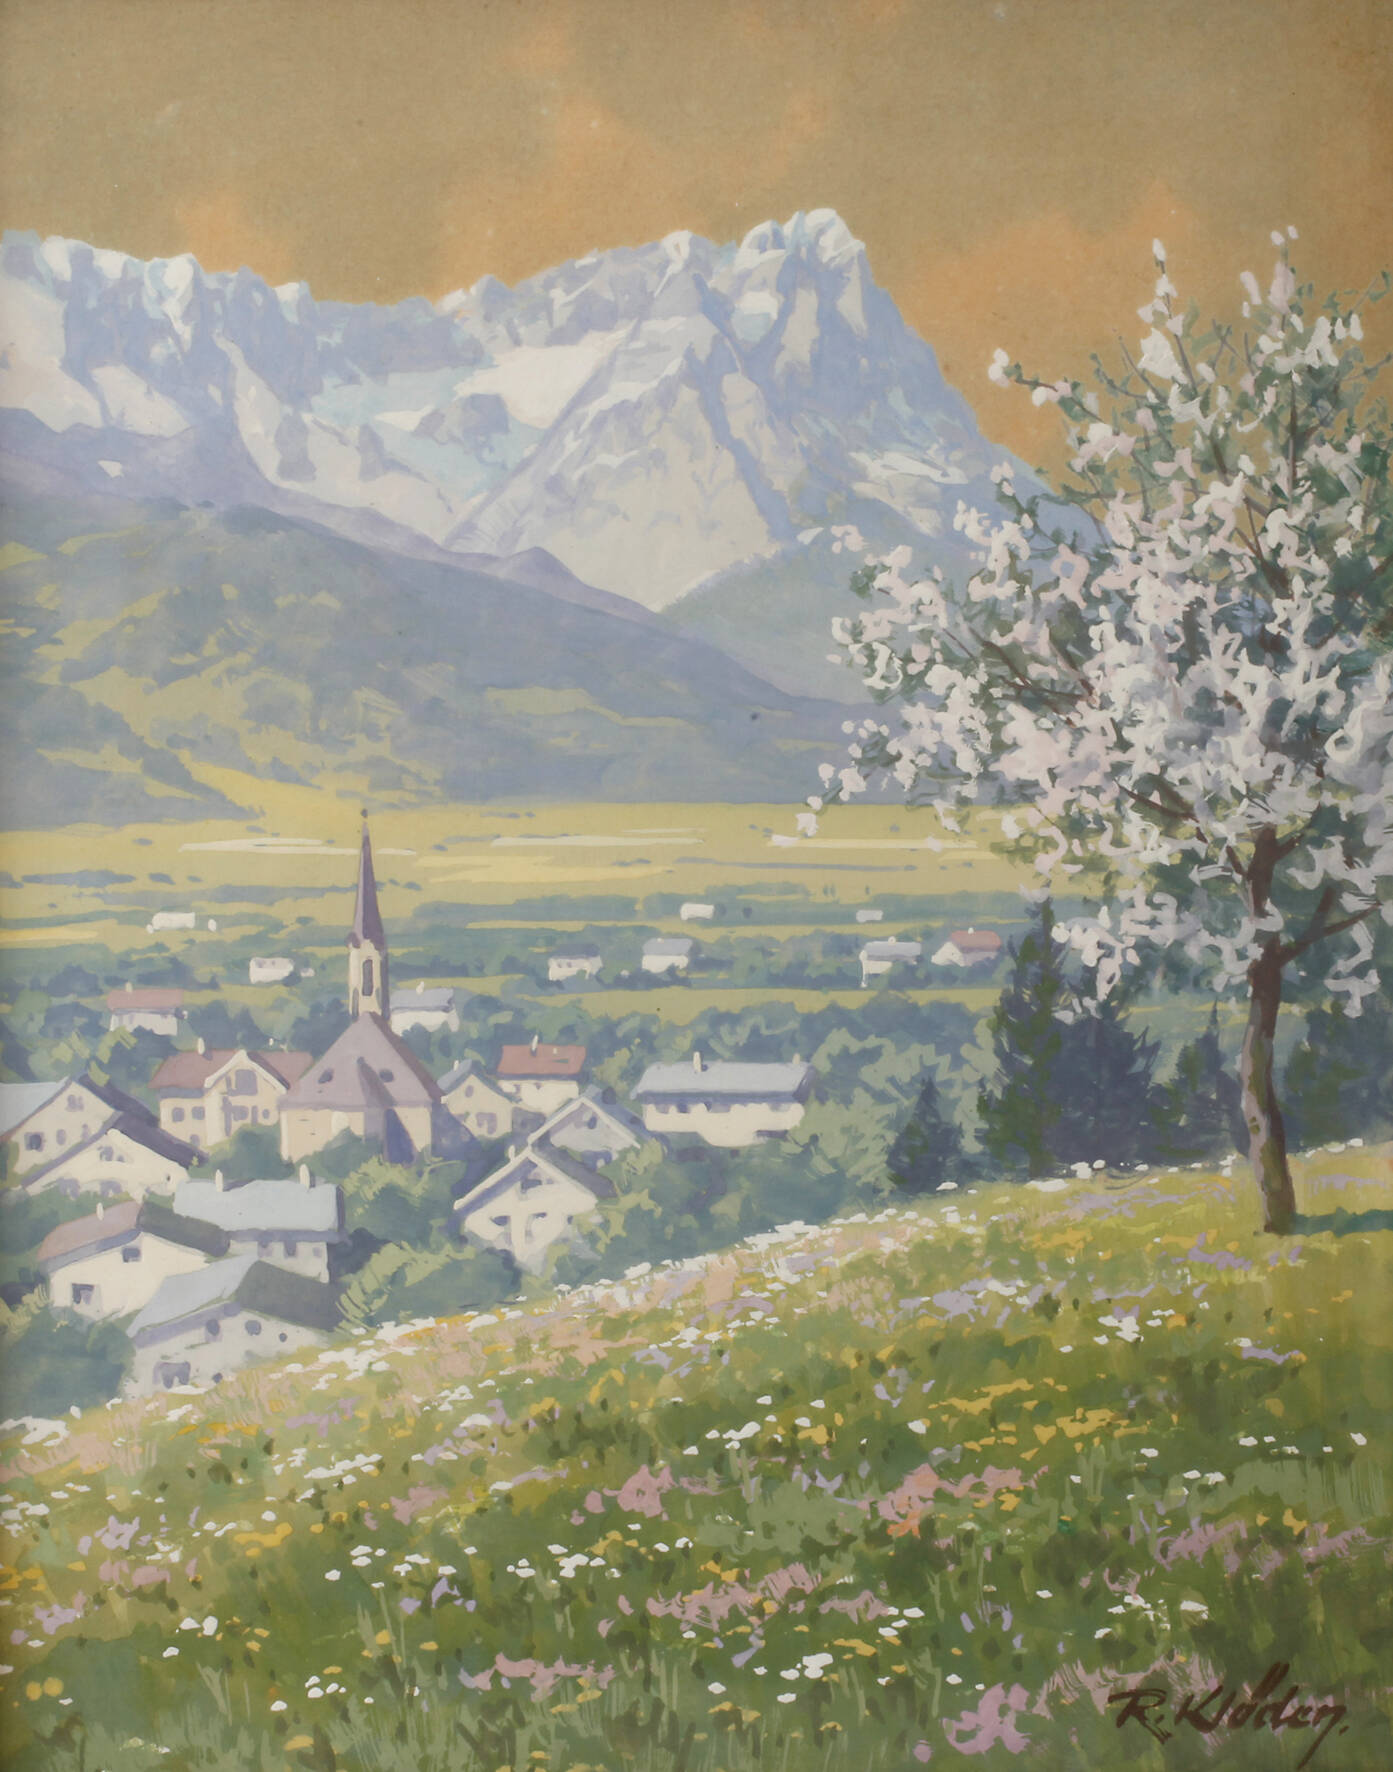 Rudolf Klöden, Frühling im Gebirge